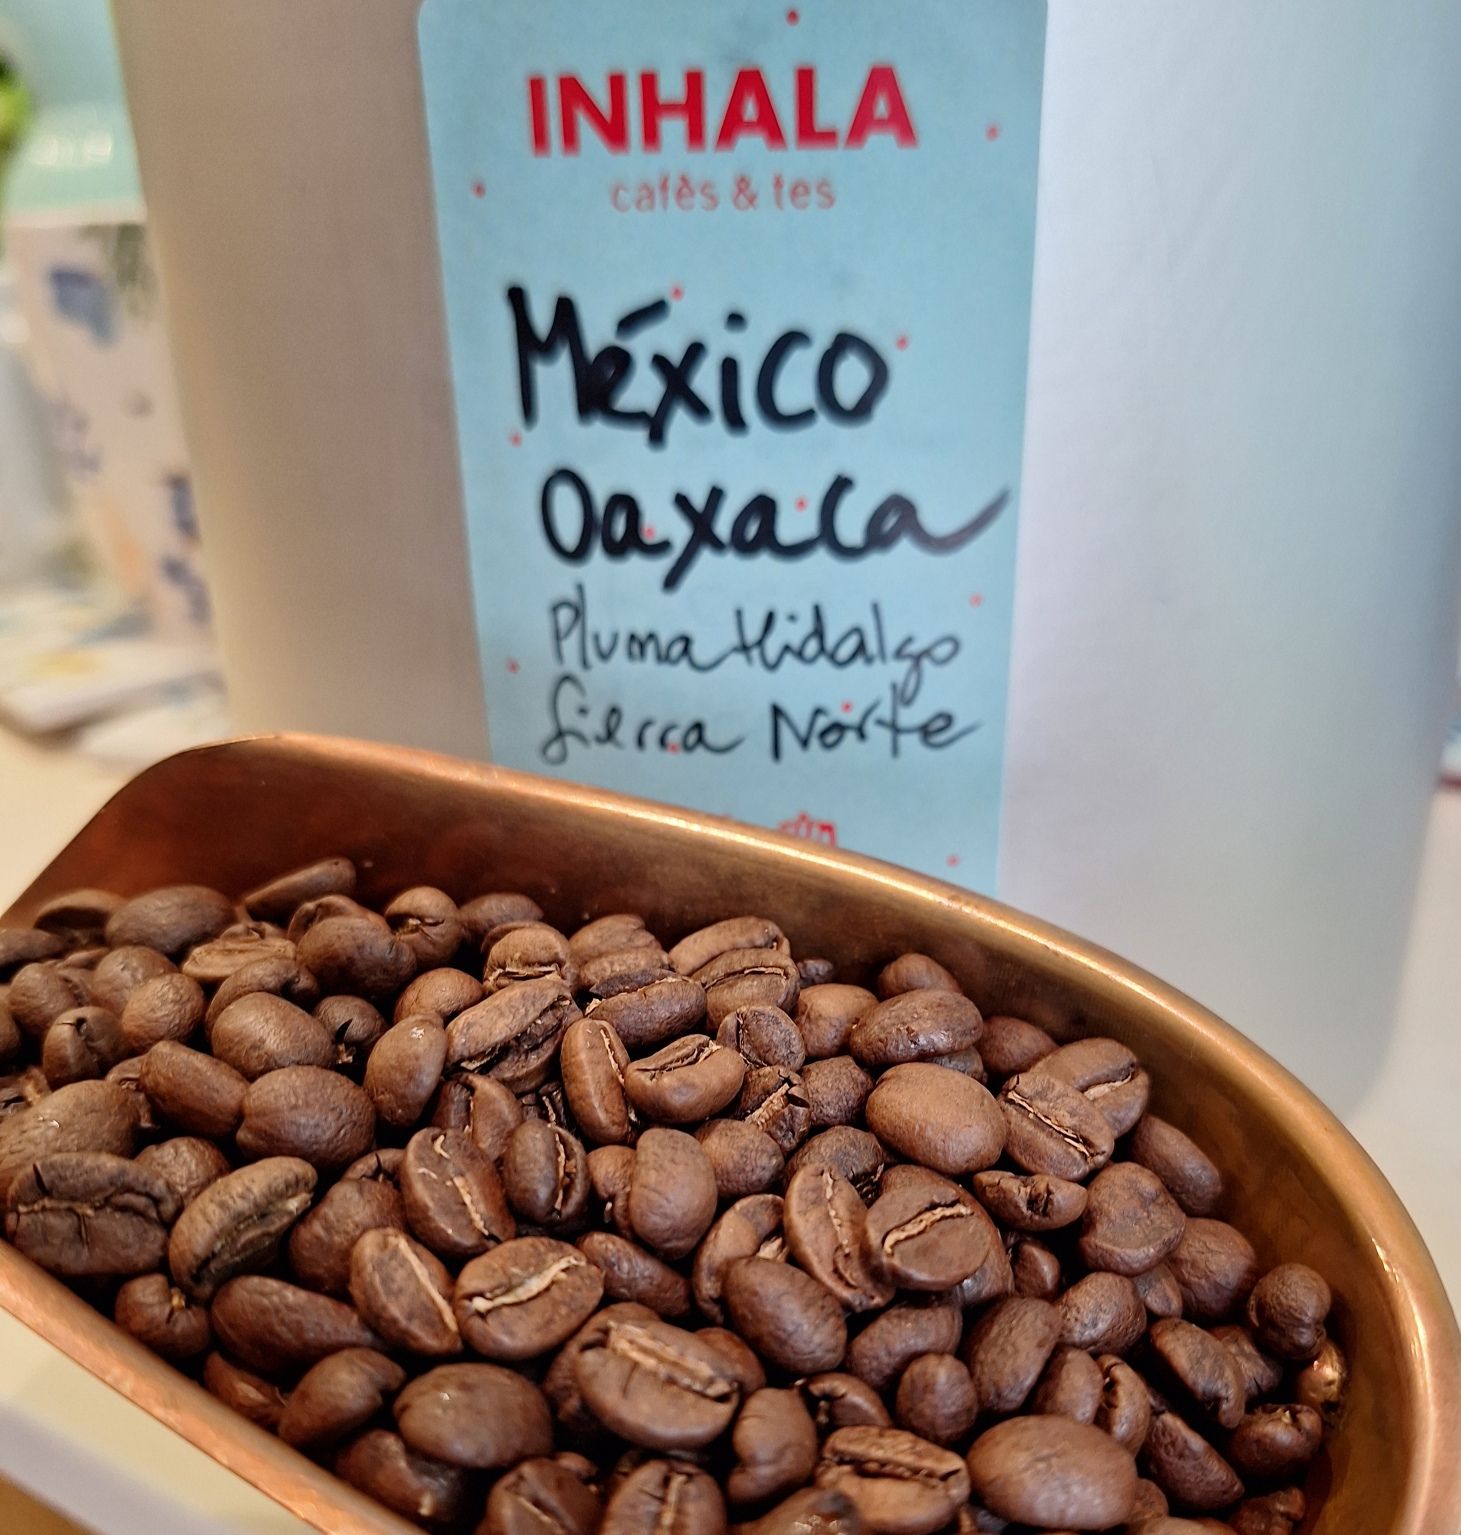 Café Arábica de MÉXICO Oaxaca "Pluma Hidalgo" Sierra Norte. Anem a México? Deixa't transportar amb les aromes i sabors d'aquest cafè tan especial pel seu equilibri en acidesa i cos, el caracteritza un punt de dolçor que el fa molt agradable per preparar en qualsevol mètode. Oaxaca és el quart estat de México en producció de café després de Chiapas, Veracruz i Puebla. Sierra Norte és una de les principals regions i Pluma Hidalgo és la zona "denominació d'origen" on creix aquest cafè entre muntanyes i rierols, a uns 1200 metres d'altitud. Reserva de la Natura amb molta diversitat. Viatjar des de la teva tassa, això és magnífic, no creus? La tassa de floretes és de la nova col.lecció de Primavera. Un pack ideal per regalar.